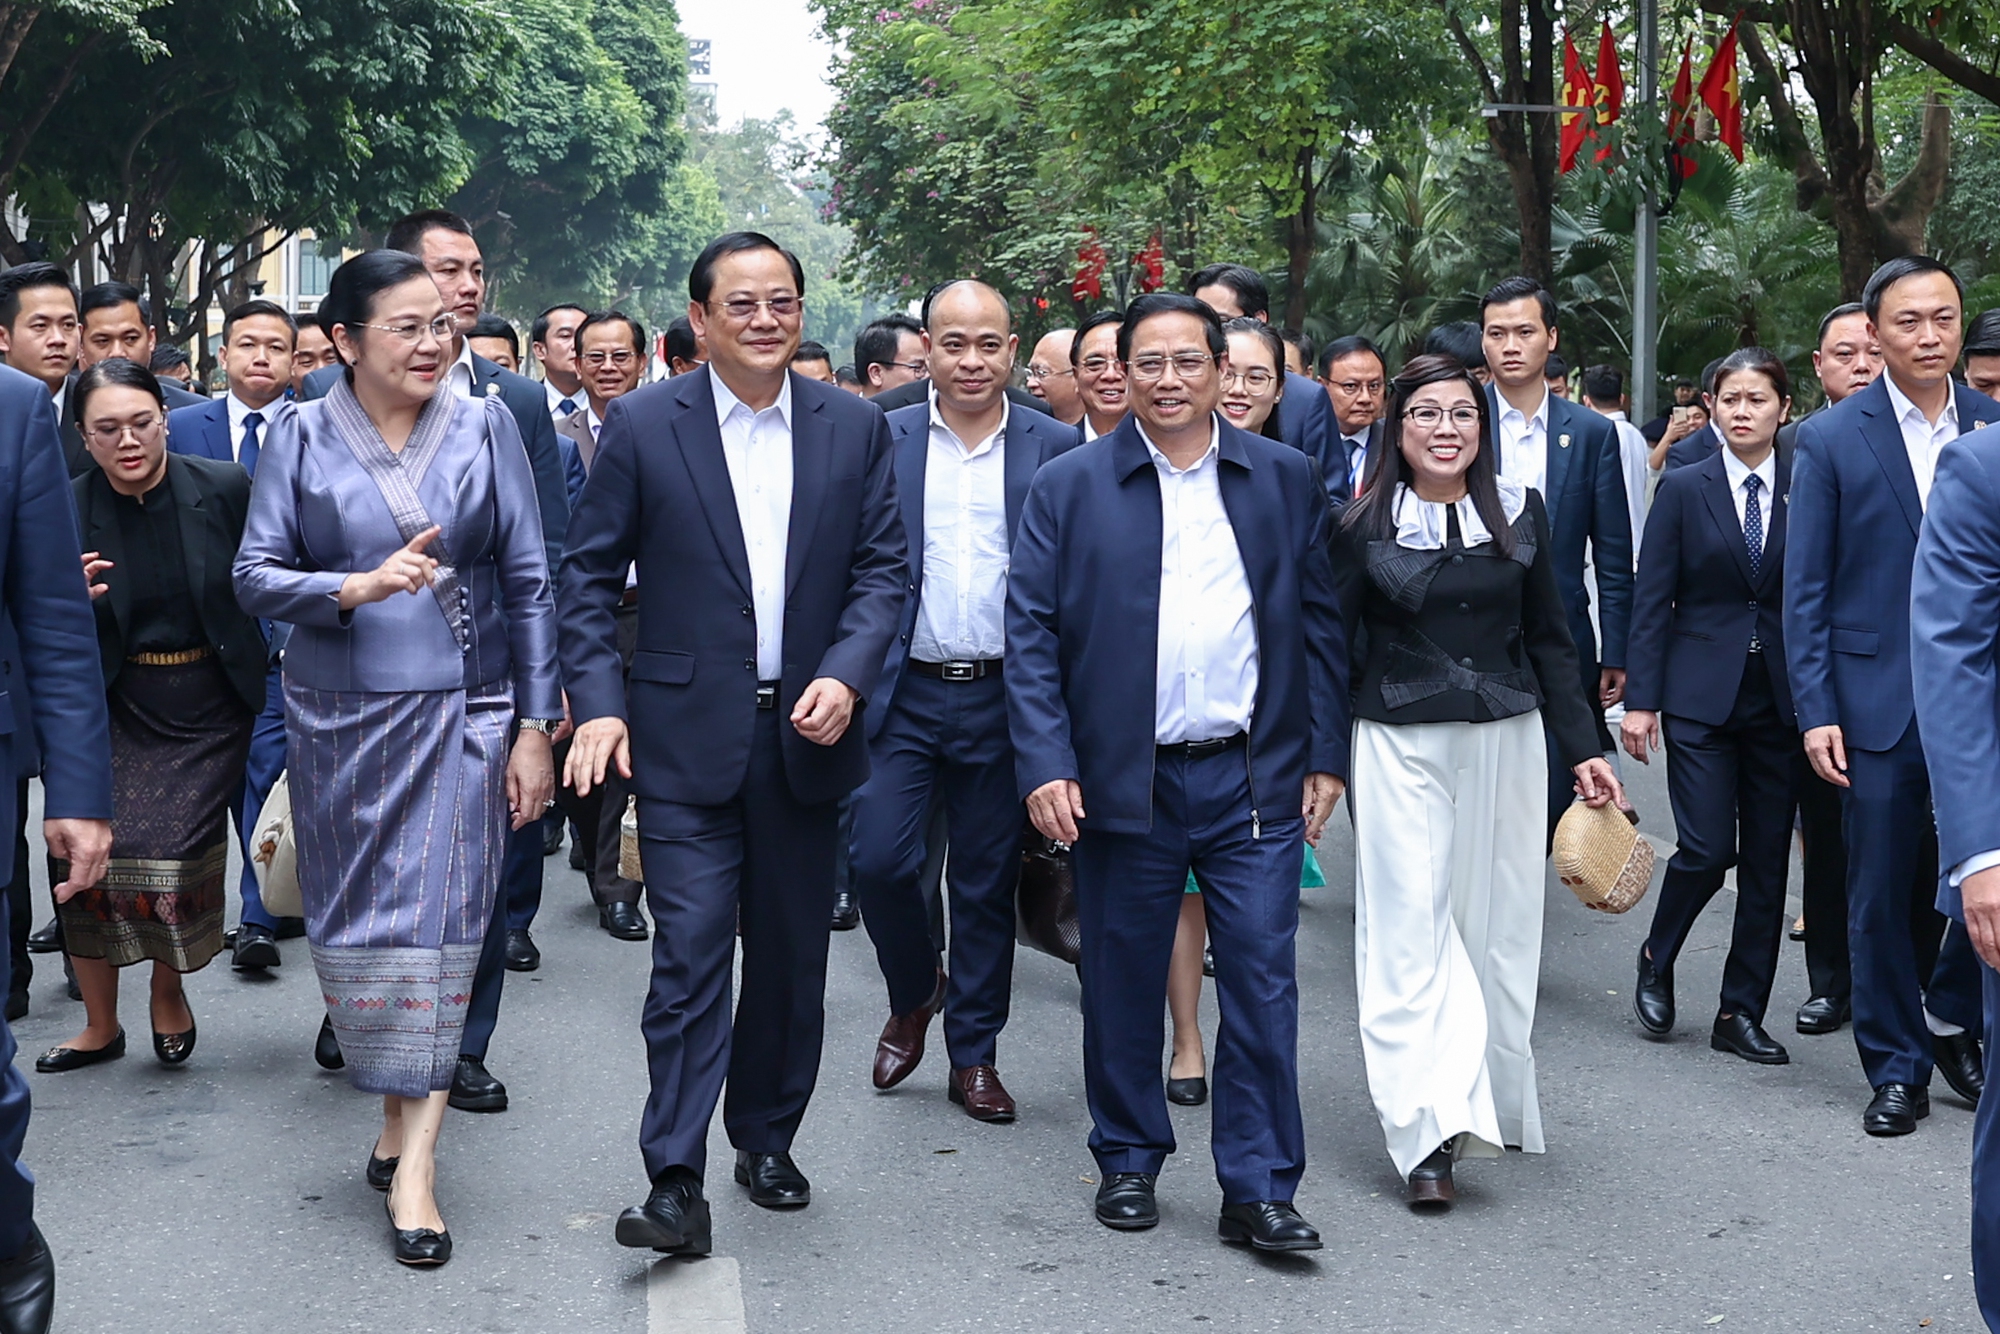 Thủ tướng Chính phủ Phạm Minh Chính và Phu nhân, cùng Thủ tướng Sonexay Siphandone và Phu nhân đã thăm đền Ngọc Sơn, dạo ngắm hồ Hoàn Kiếm - Ảnh: VGP/Nhật Bắc